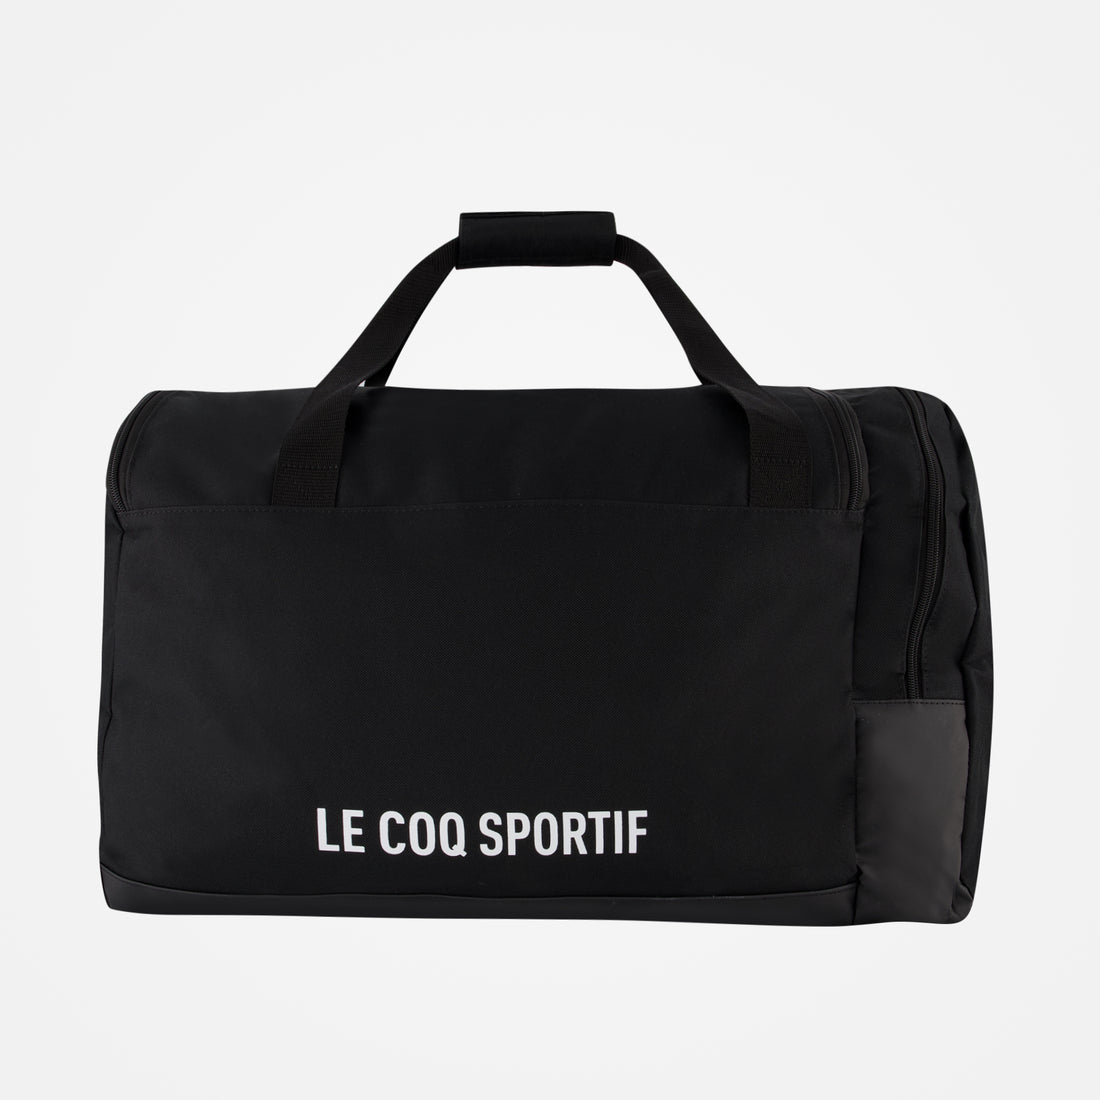 2020933-TRAINING Sportbag L/XL black | Sac de sport